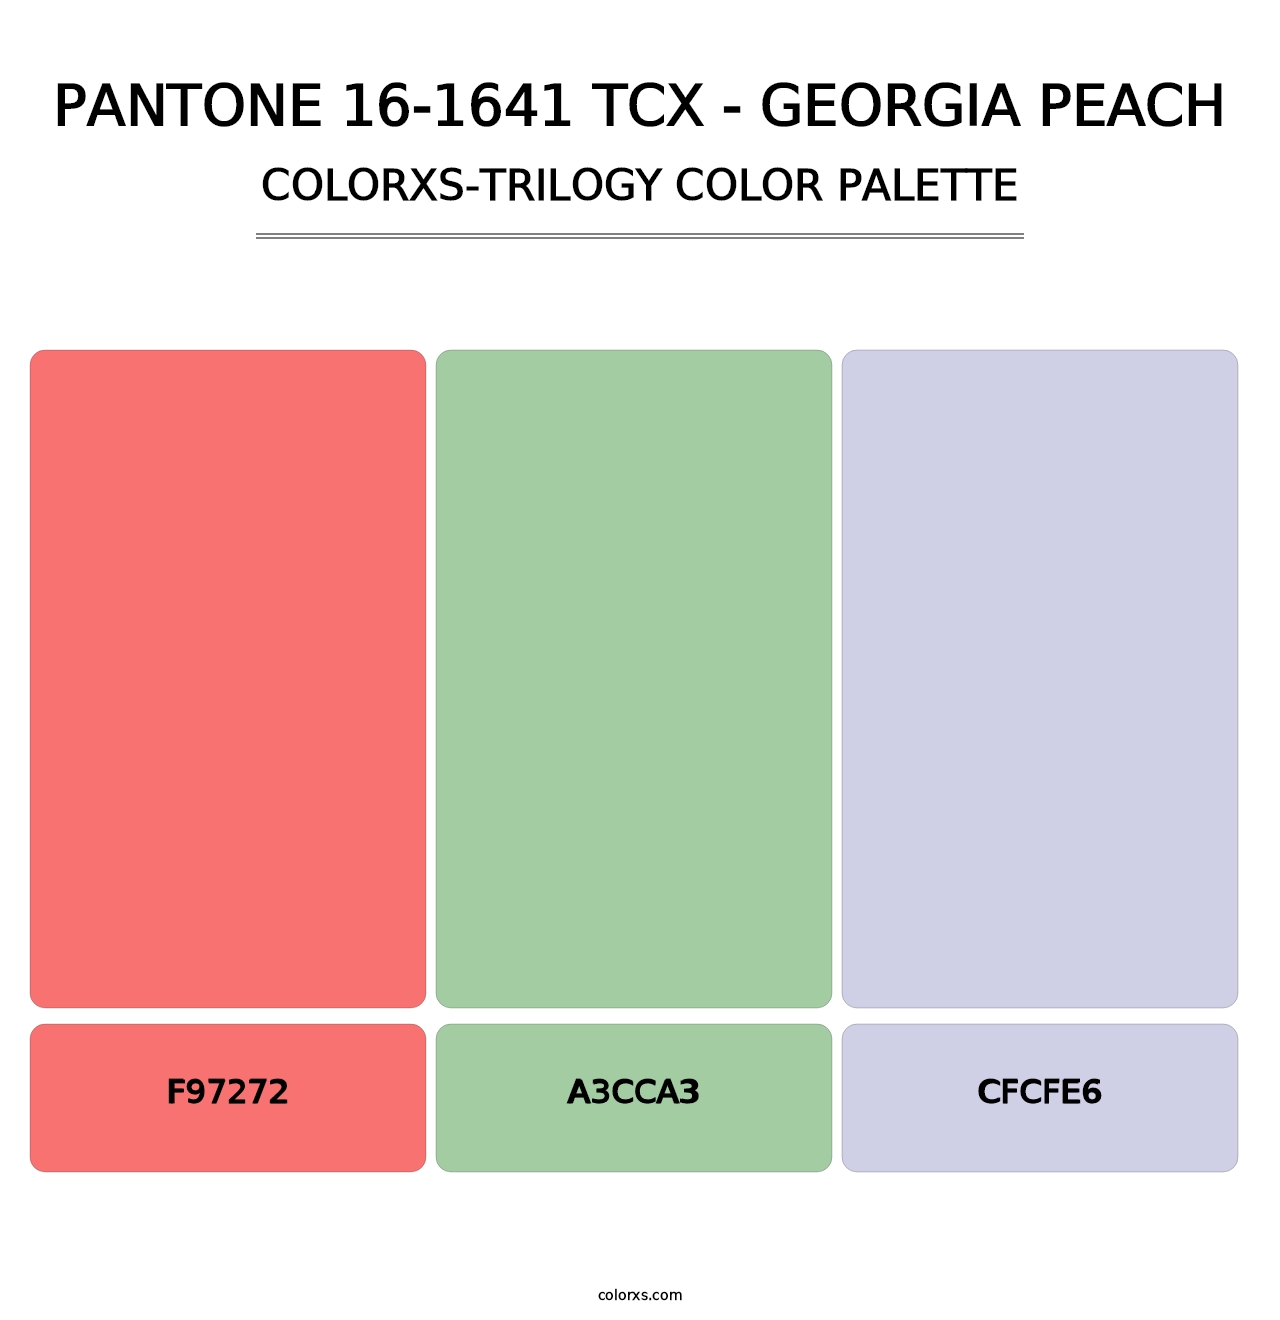 PANTONE 16-1641 TCX - Georgia Peach - Colorxs Trilogy Palette